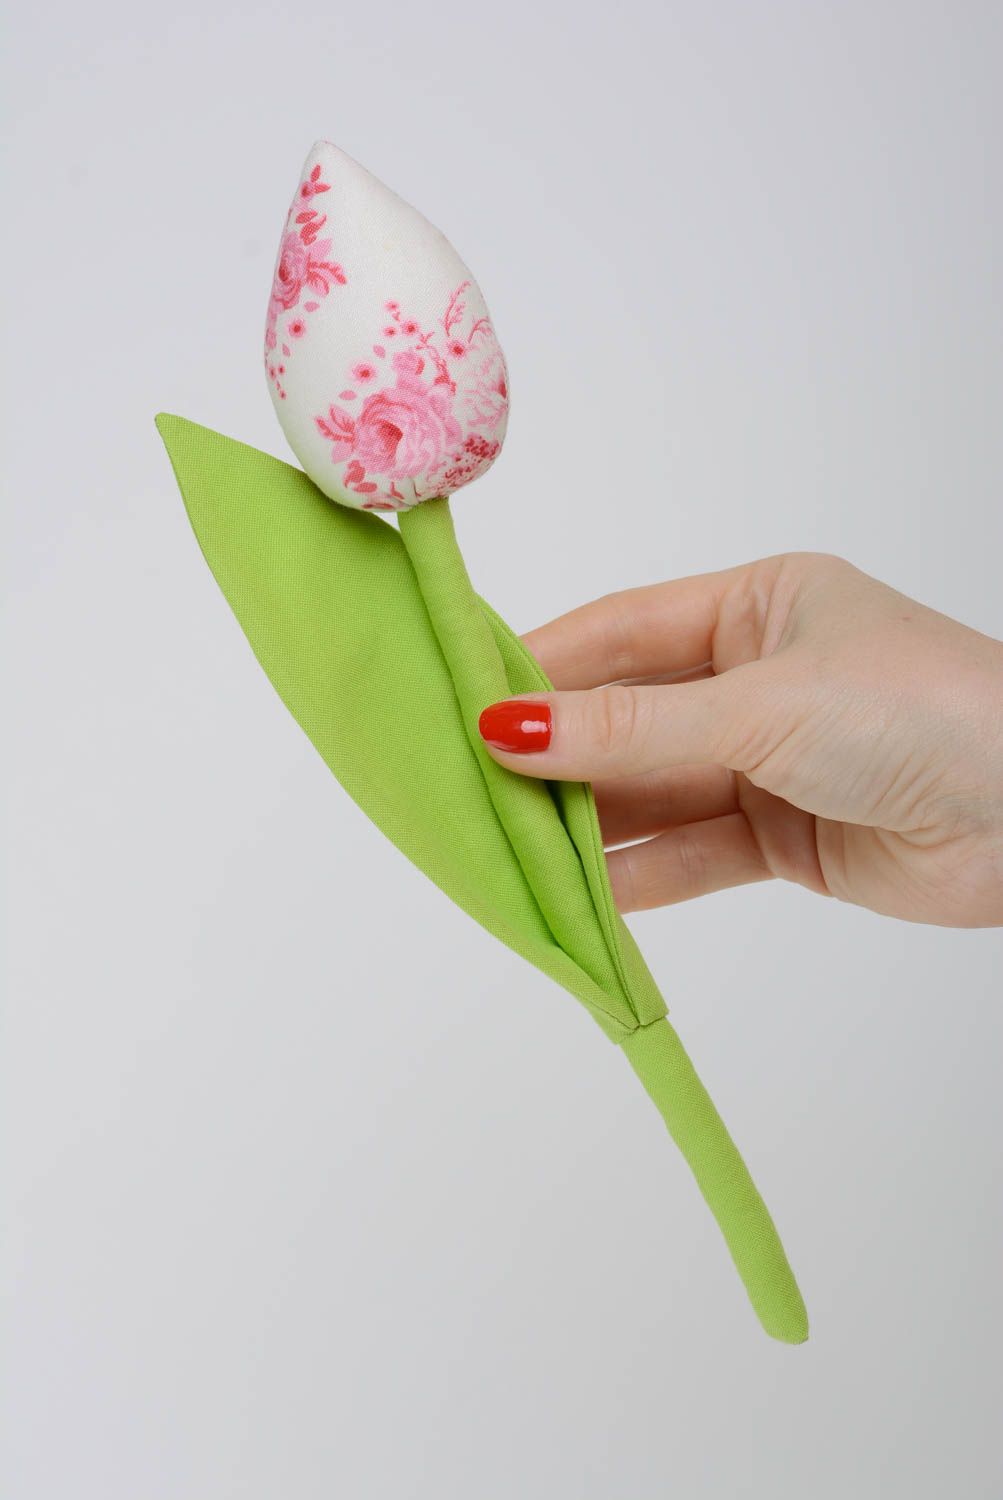 Текстильный тюльпан из хлопка на гибкой ножке для декора или фотосессии хенд мэйд фото 4